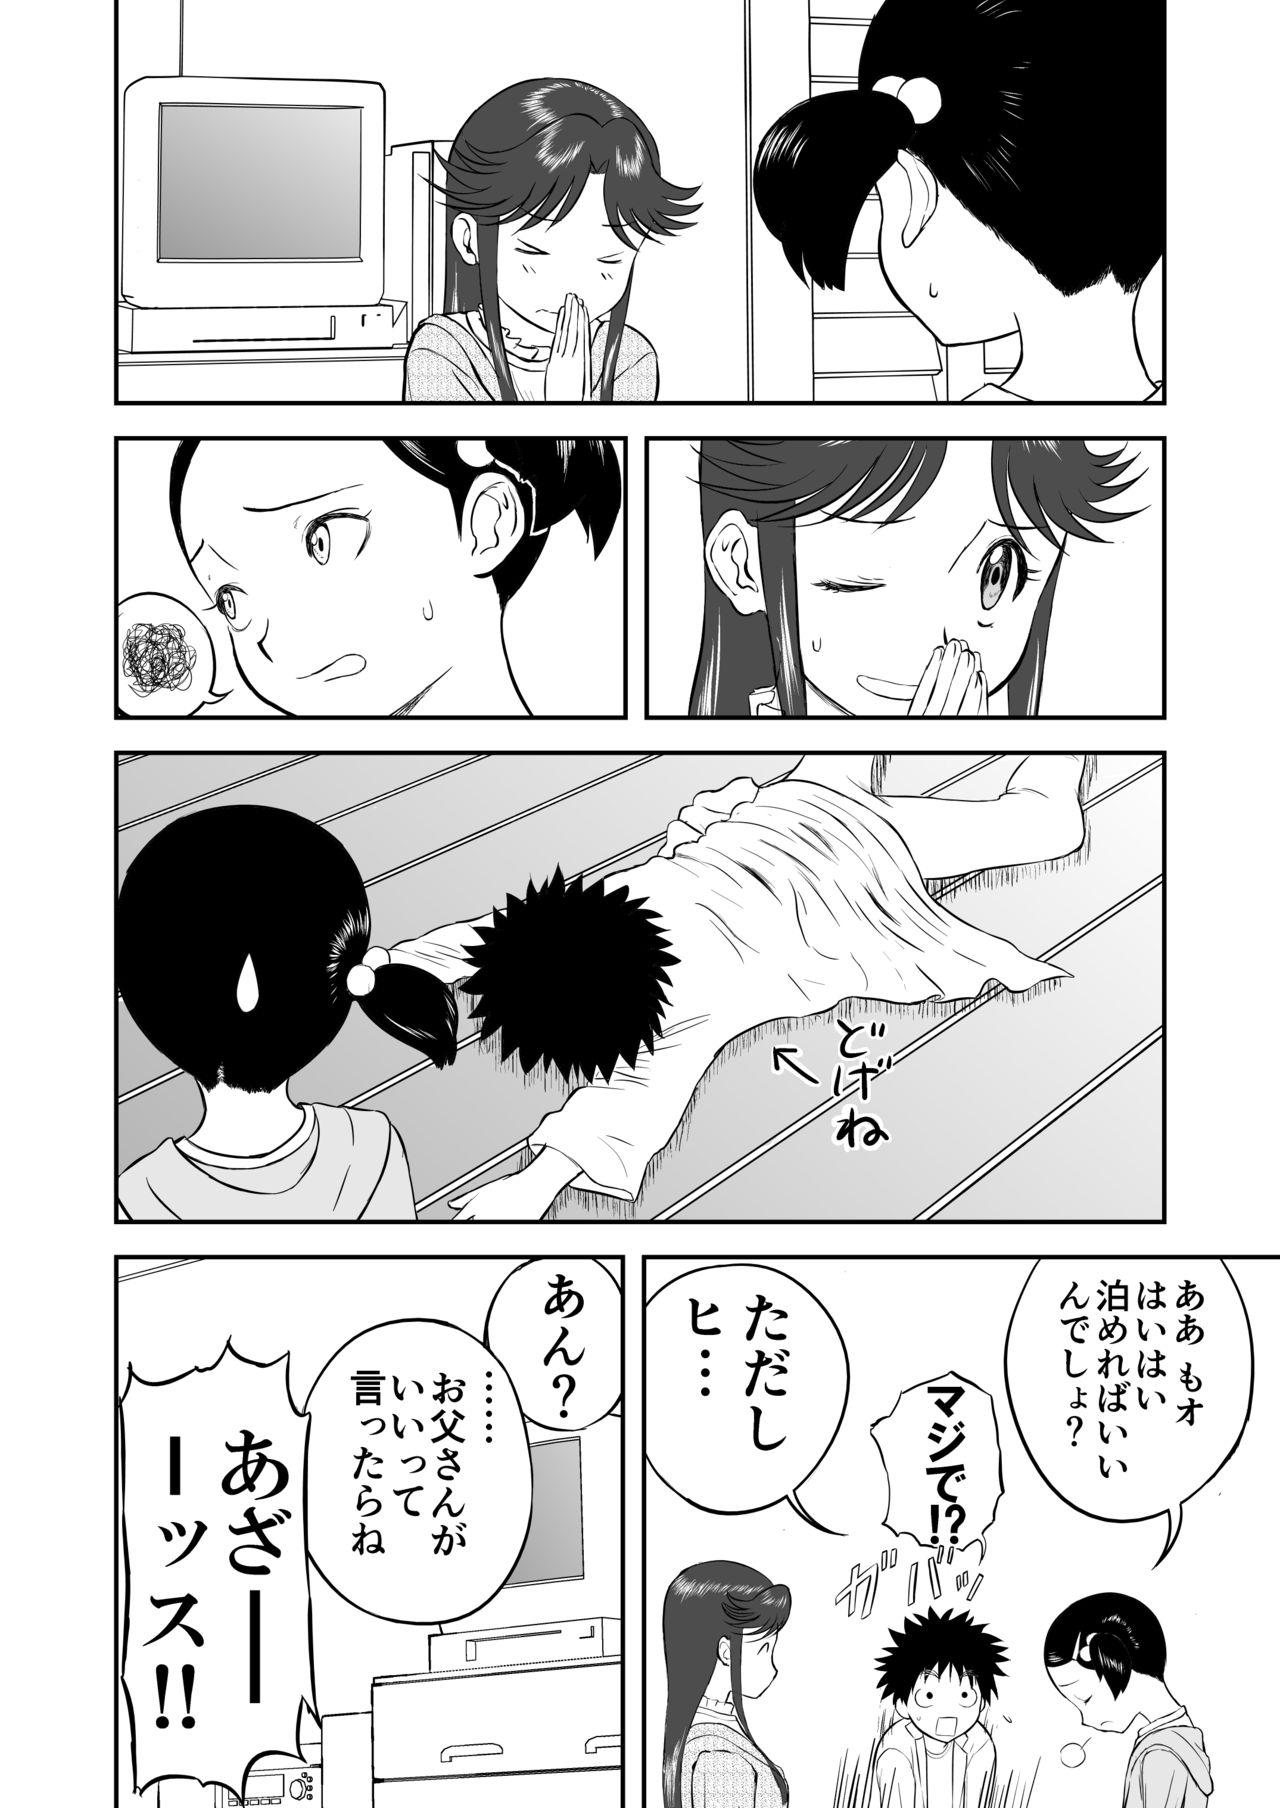 Scissoring Mousou Meisaku Kuradashi Gekijou Sono 3 "NanKite San" + Omake - Original Escort - Page 6